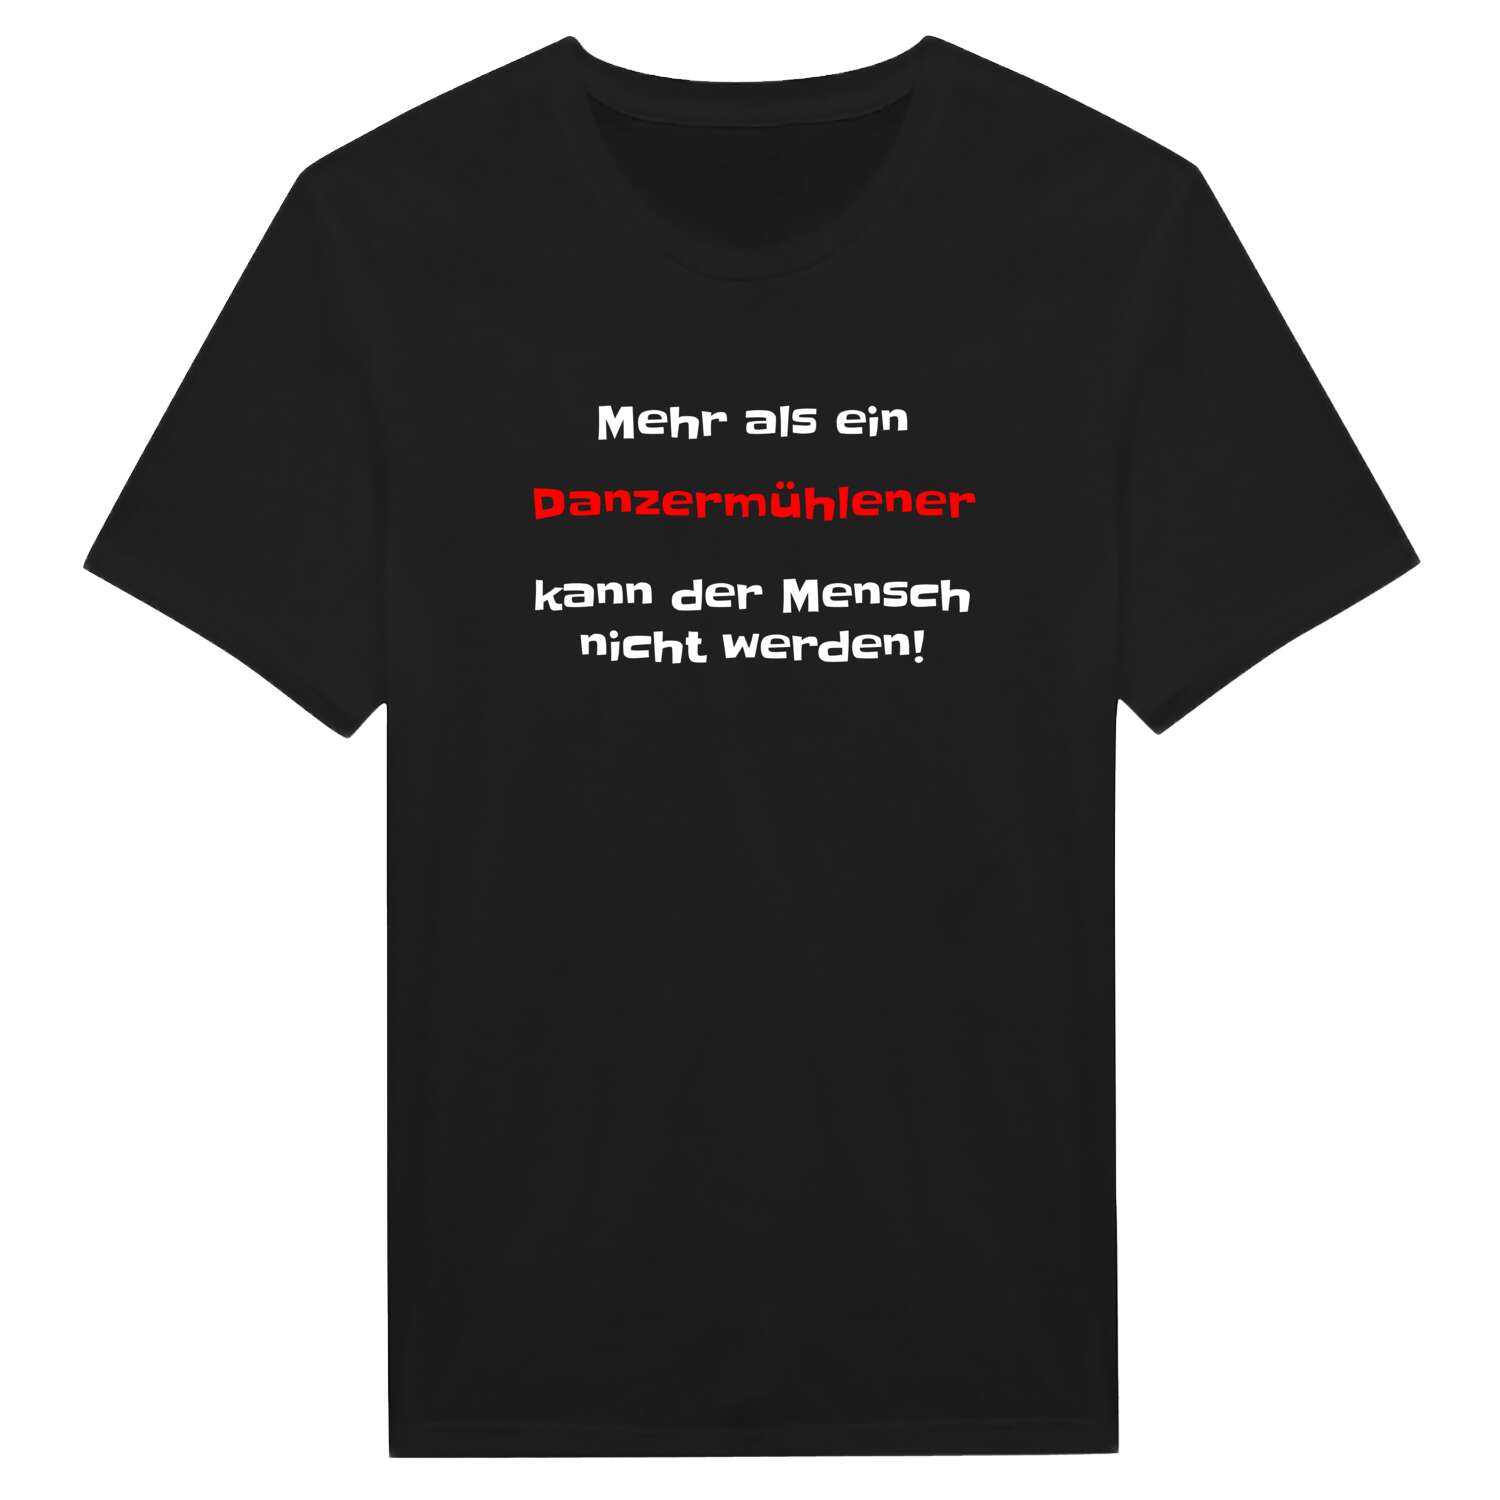 Danzermühle T-Shirt »Mehr als ein«